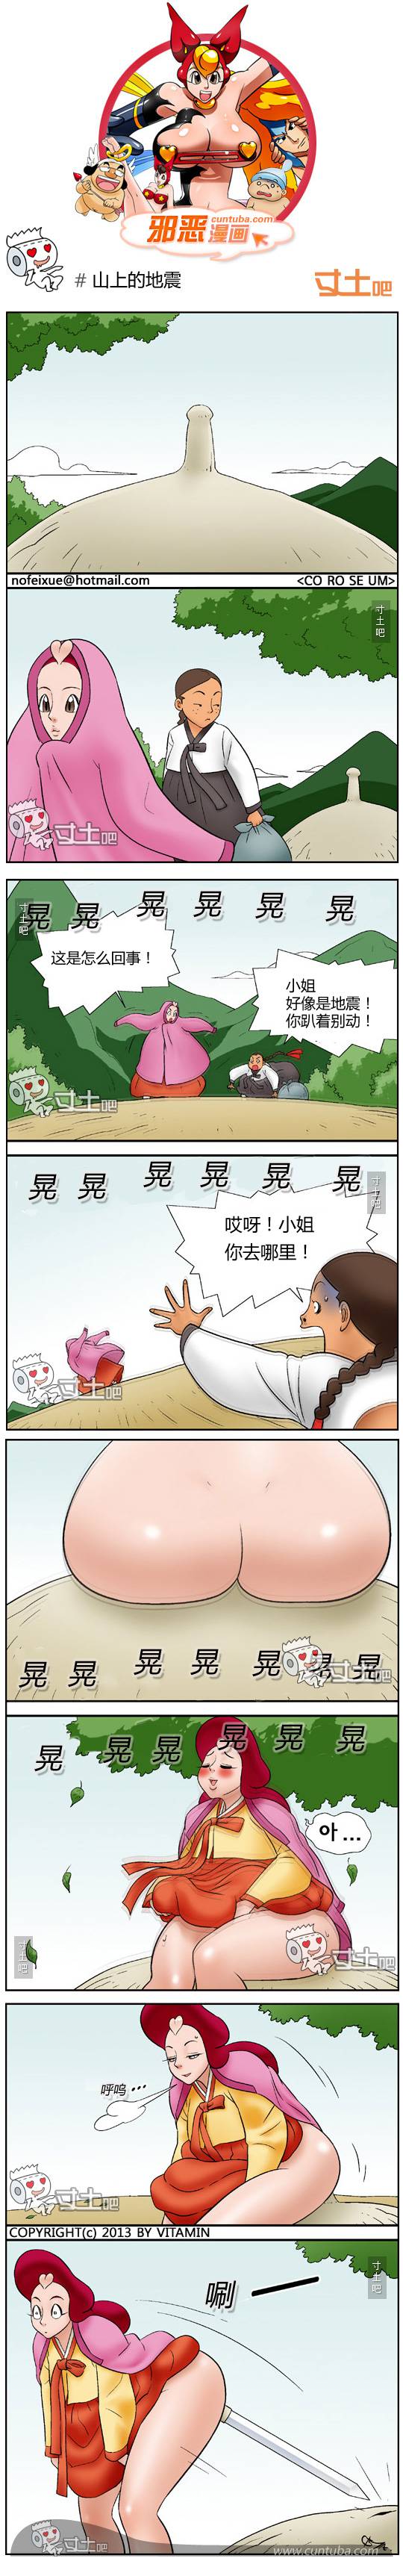 邪恶漫画爆笑囧图第179刊：昂